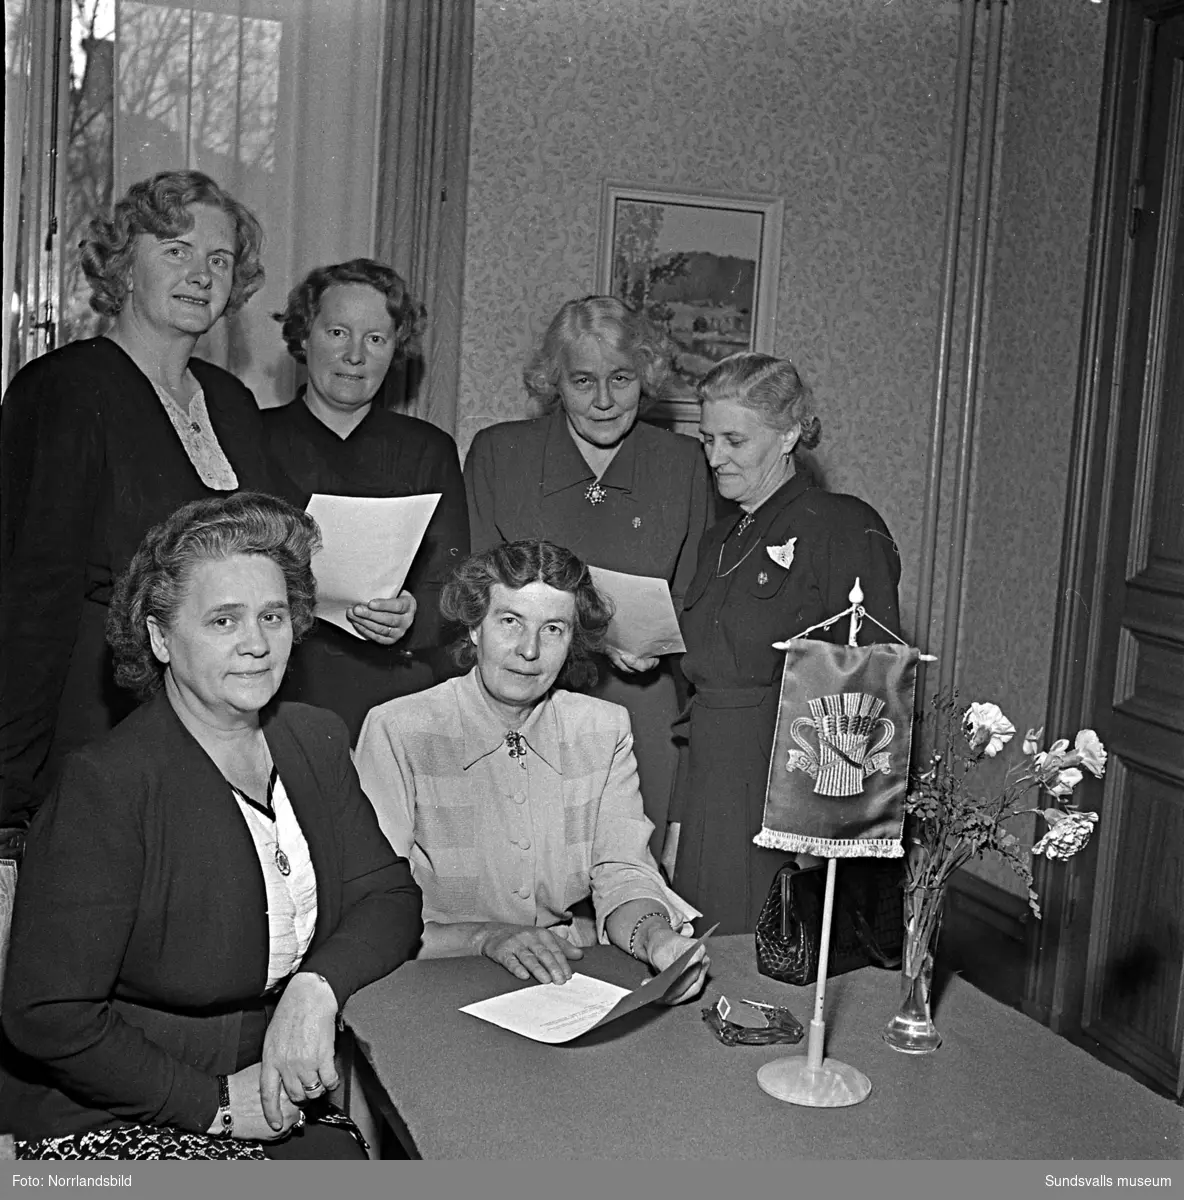 Jäktet var ämnet på denna konferens med Medelpads SLKF-kvinnor, Svenska Landsbygdens Kvinnoförbund (Centerkvinnorna).